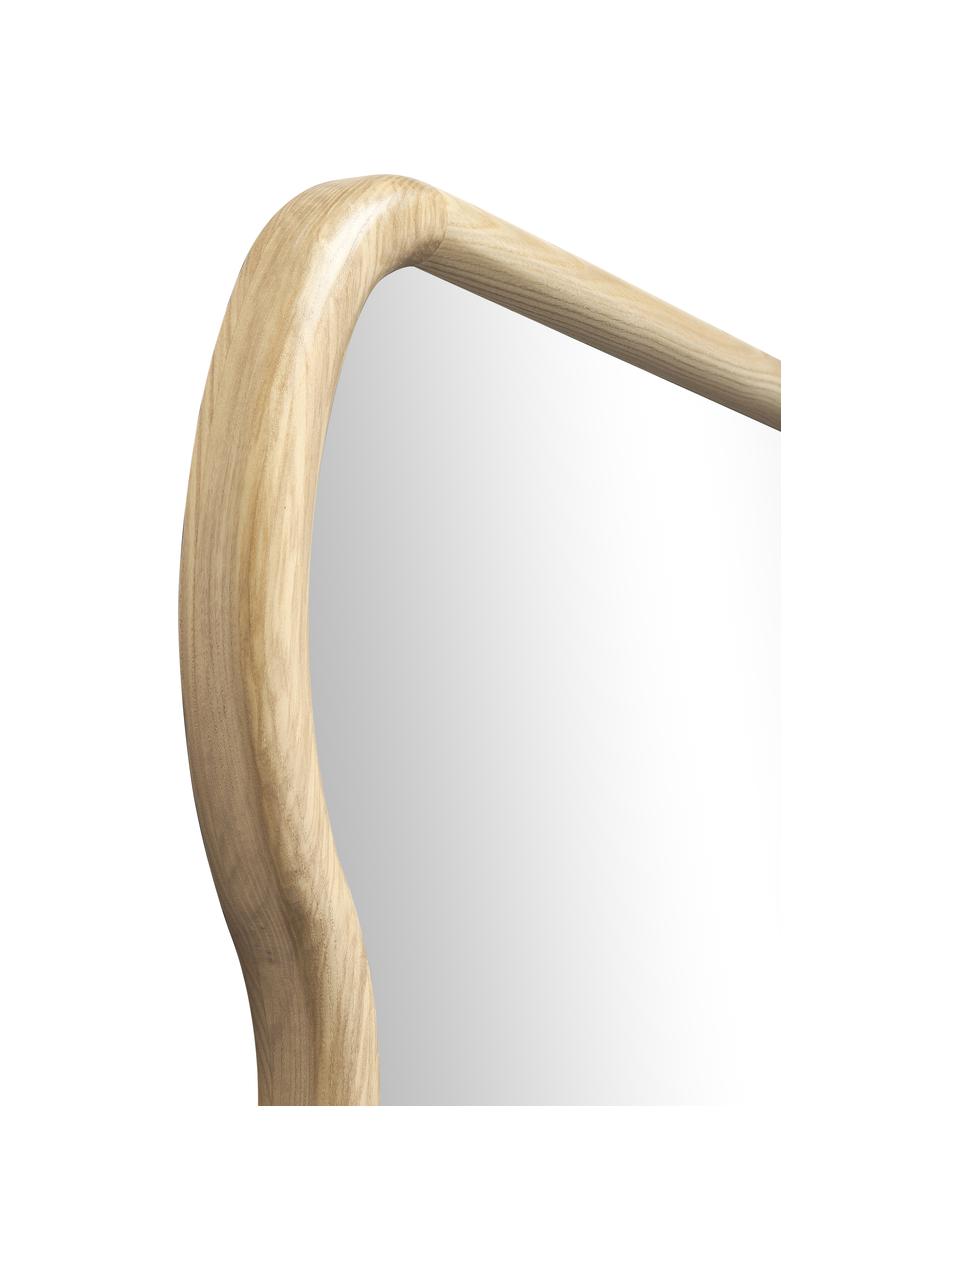 Wellenförmiger Wandspiegel Stream aus Holz, Rahmen: Eschenholz, Spiegelfläche: Spiegelglas, Rückseite: Mitteldichte Holzfaserpla, Beige, B 70 x H 100 cm